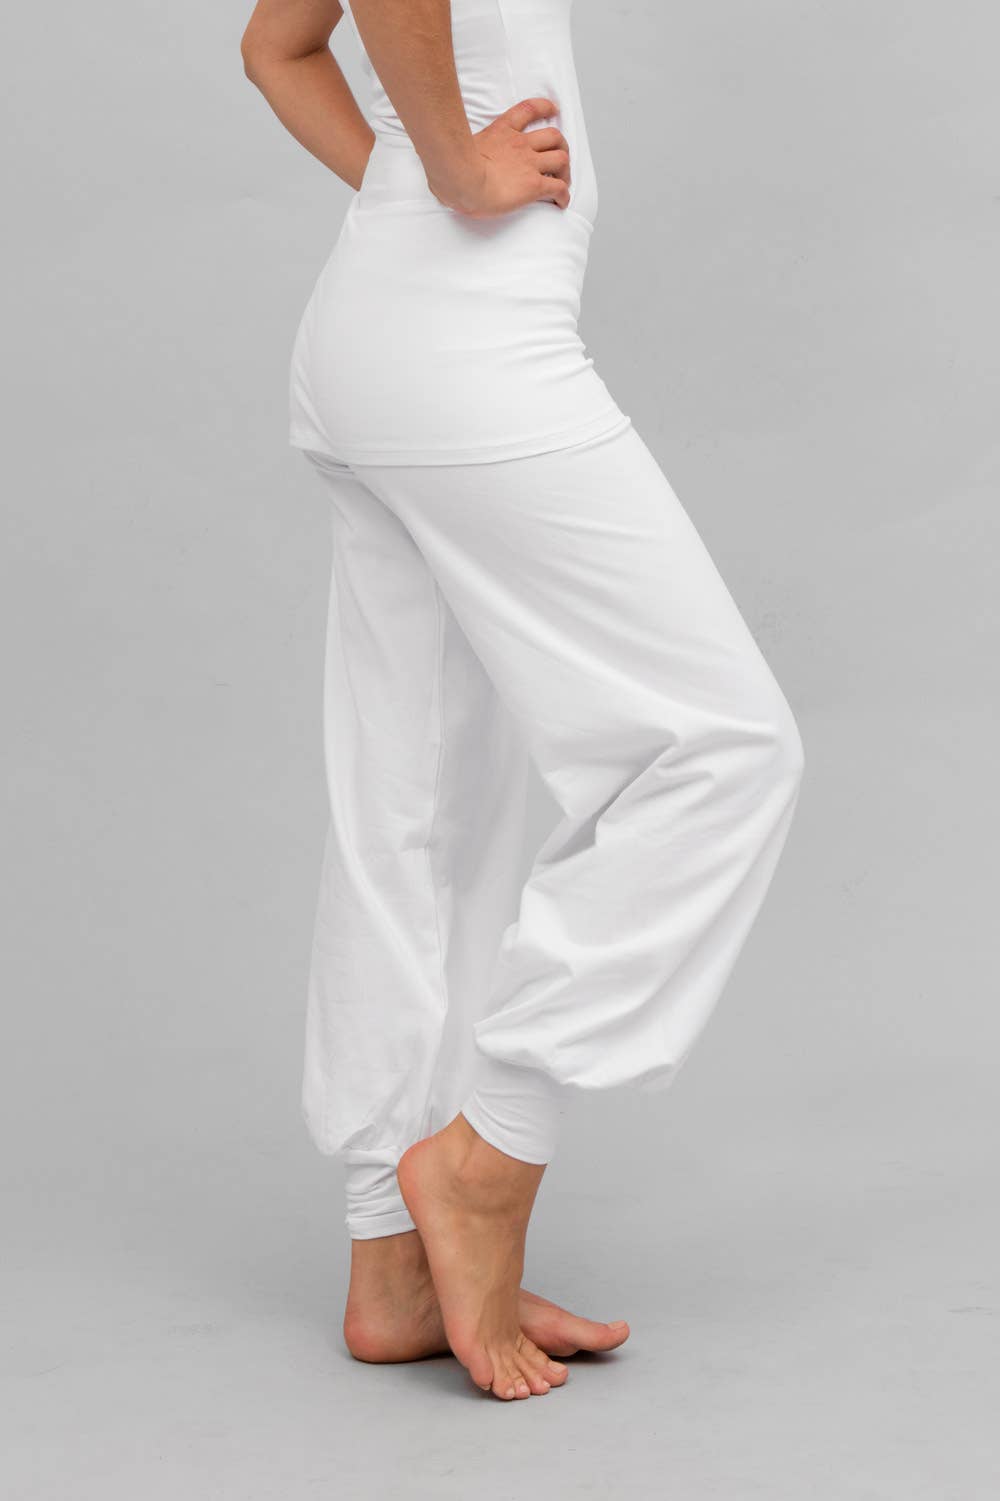 Women's white yoga pants - Om Bouddhiste - Lotus